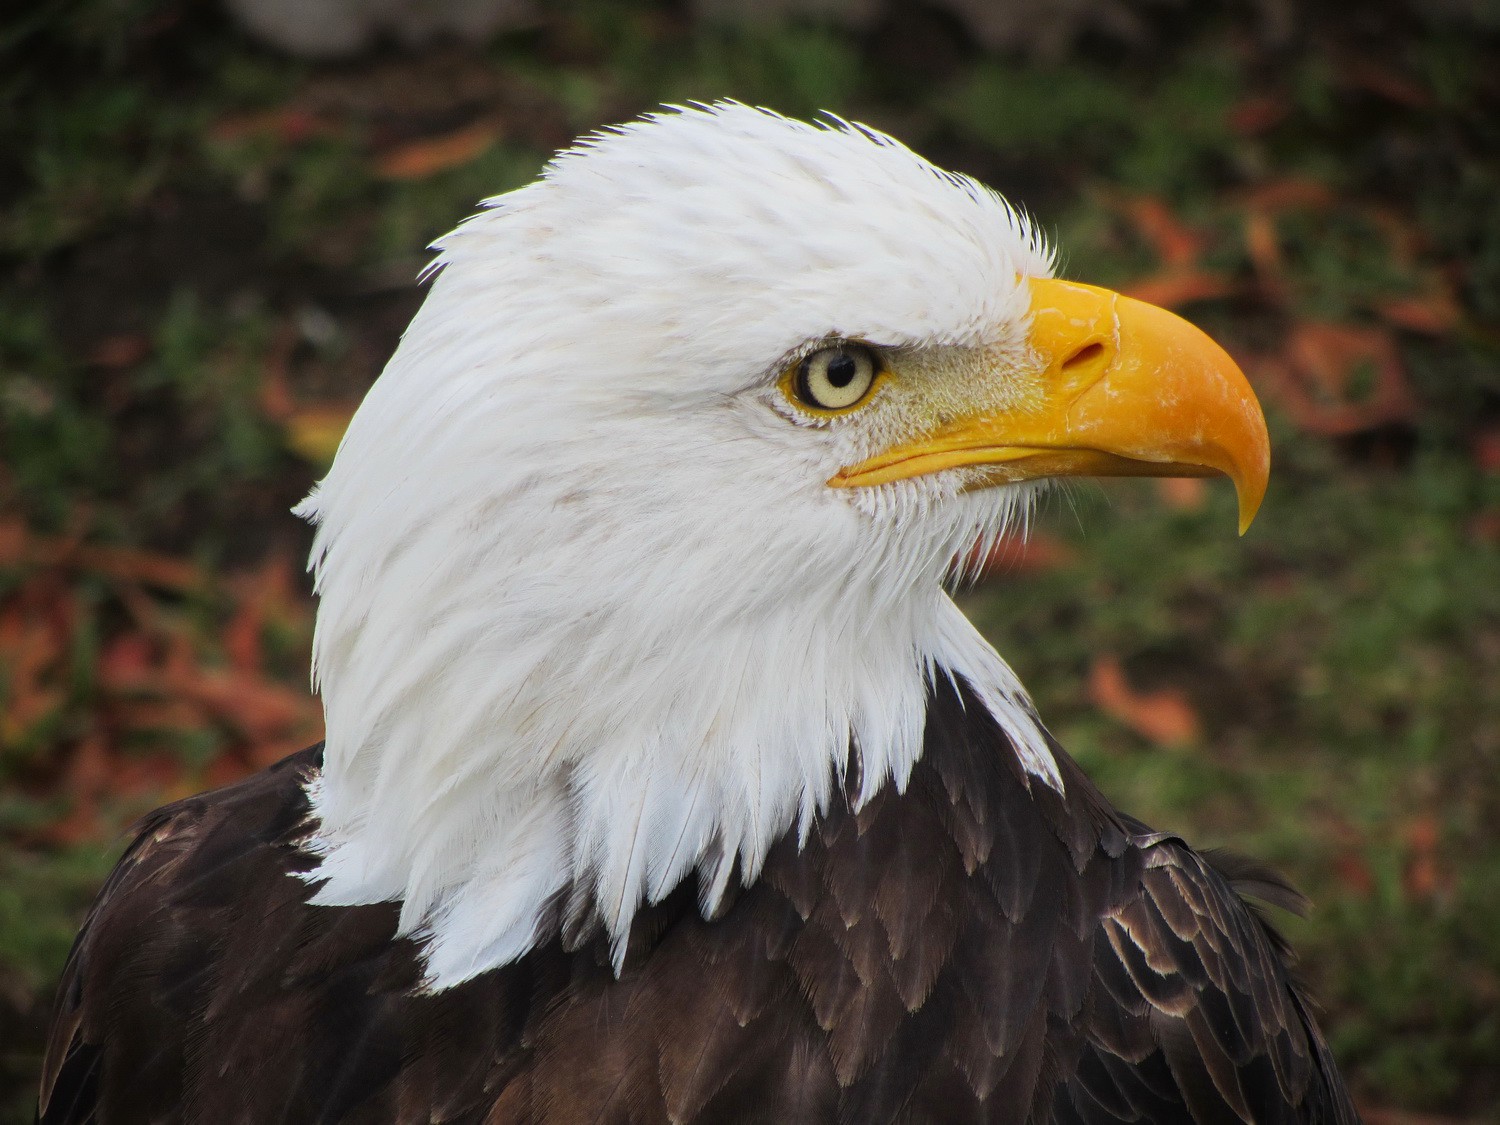 White-headed Eagle in the Parque el Condor